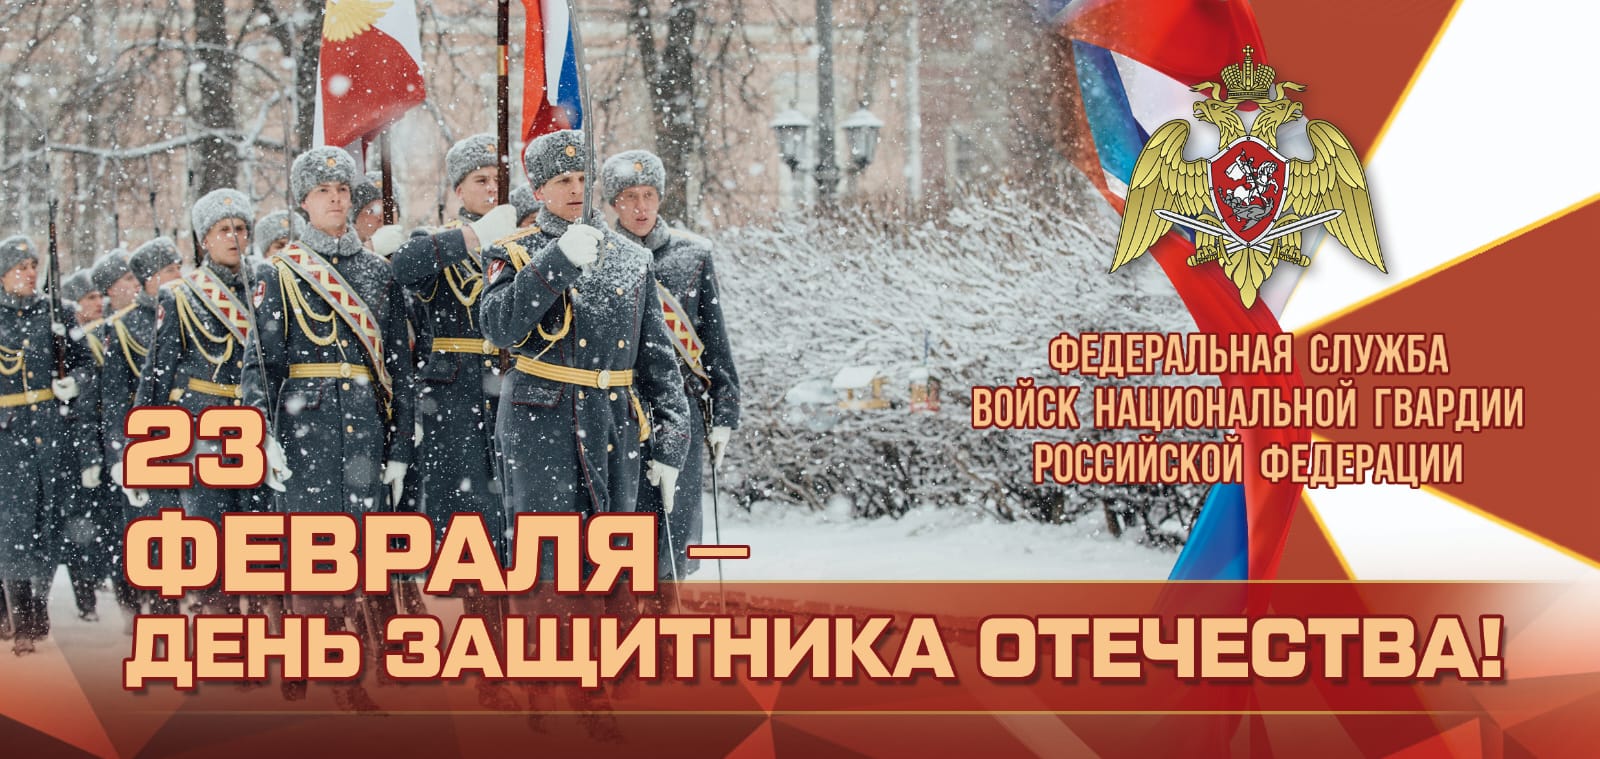 Директор Росгвардии поздравил ветеранов Великой Отечественной войны с Днем защитника Отечества